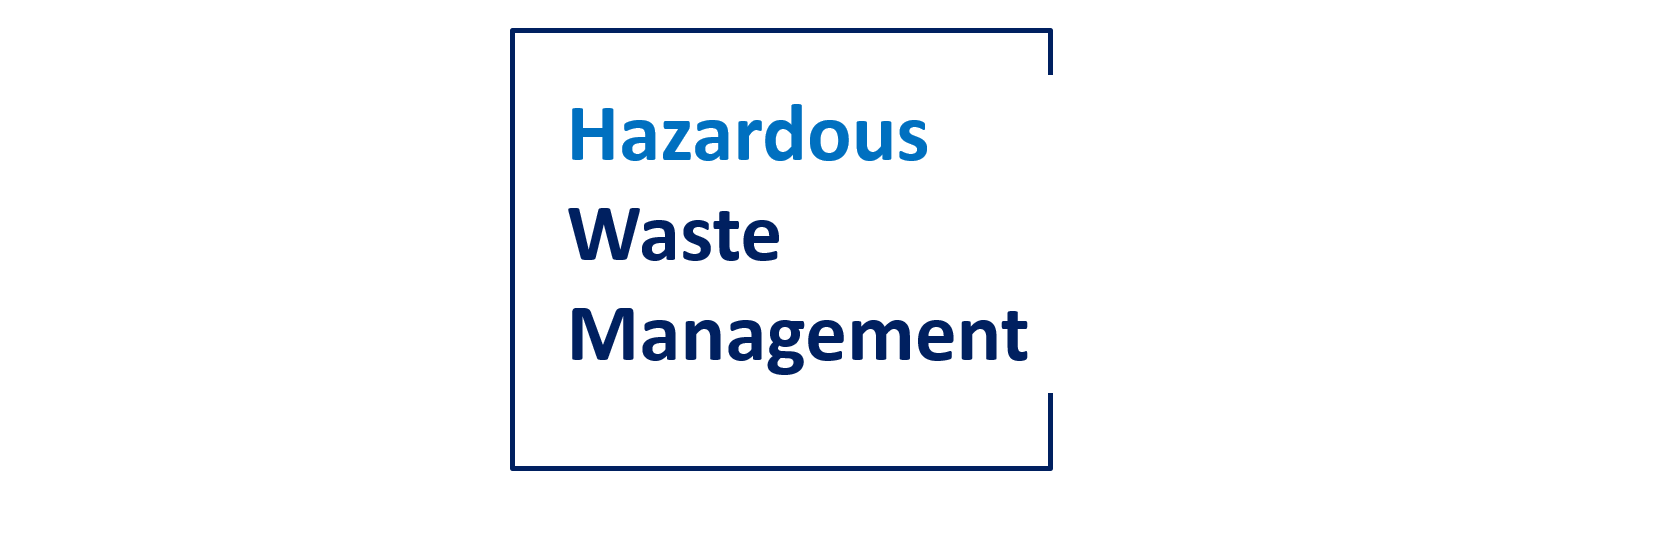 Hazardous Waste Management 